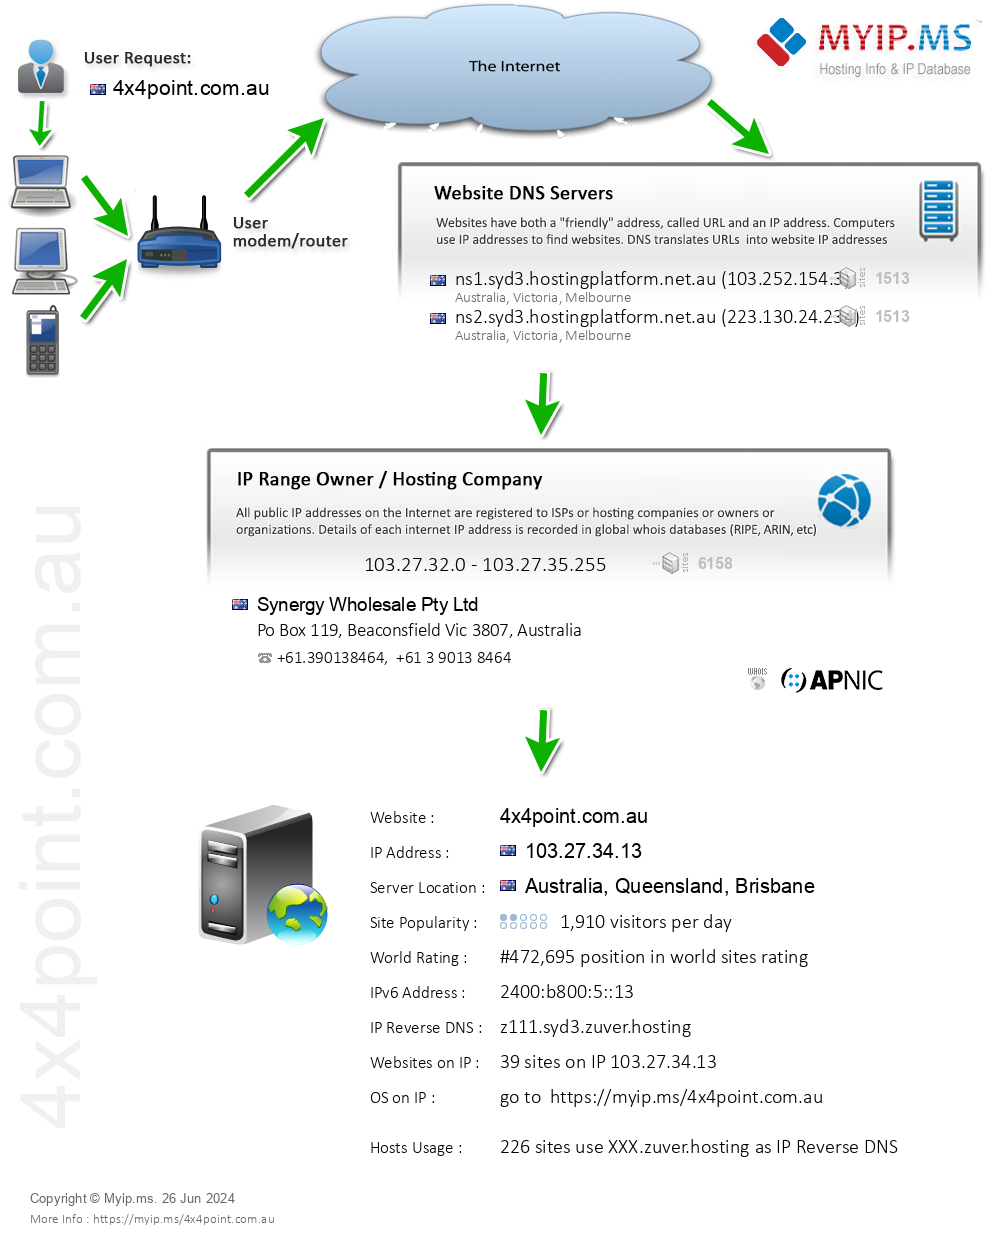 4x4point.com.au - Website Hosting Visual IP Diagram